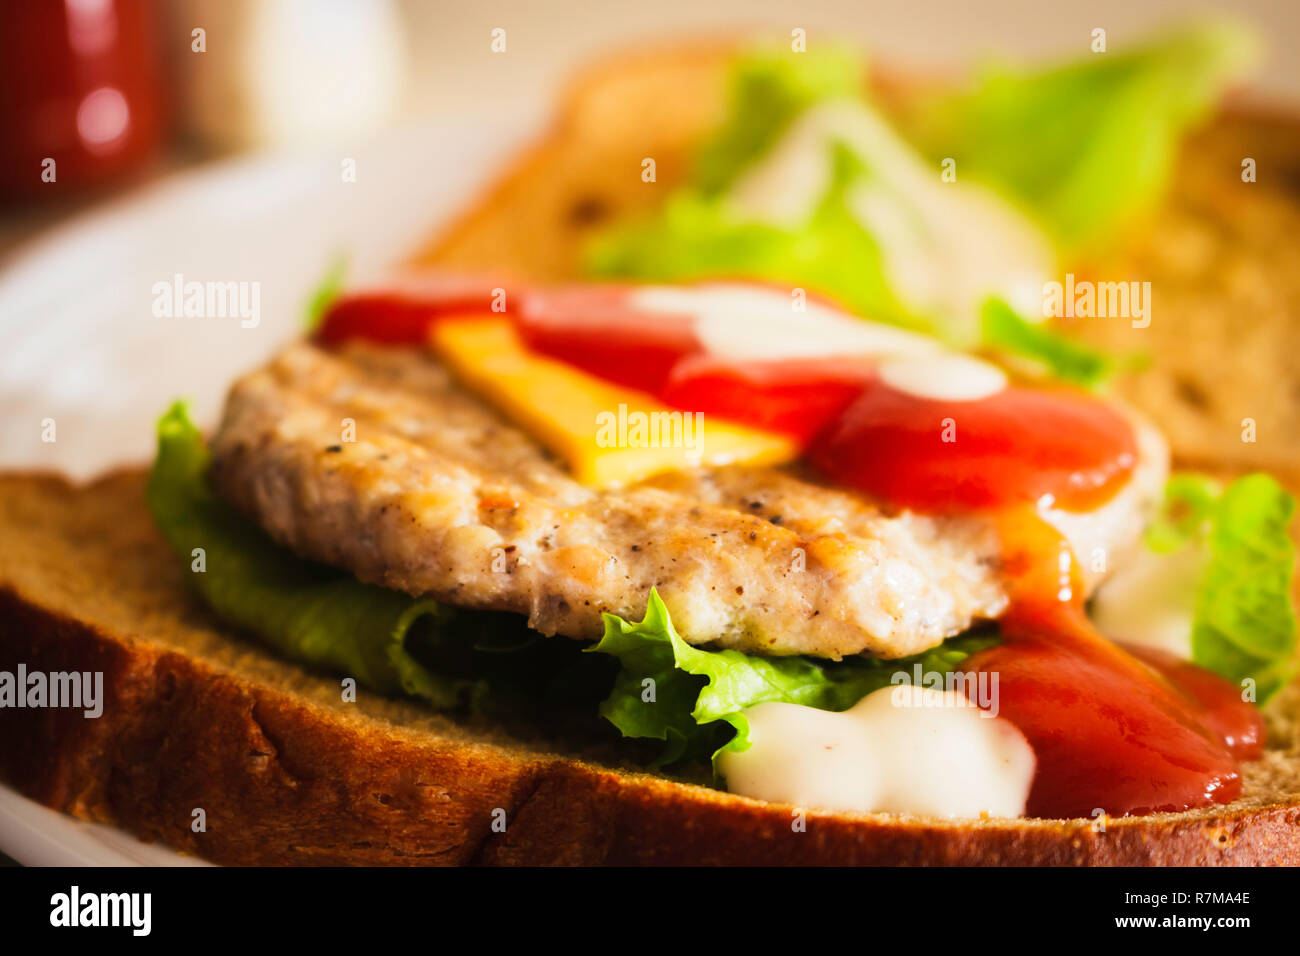 Hamburger fatto da grano integrale a fette di pane, formaggio, lattuga e condito con ketchup e condimento per insalata Foto Stock